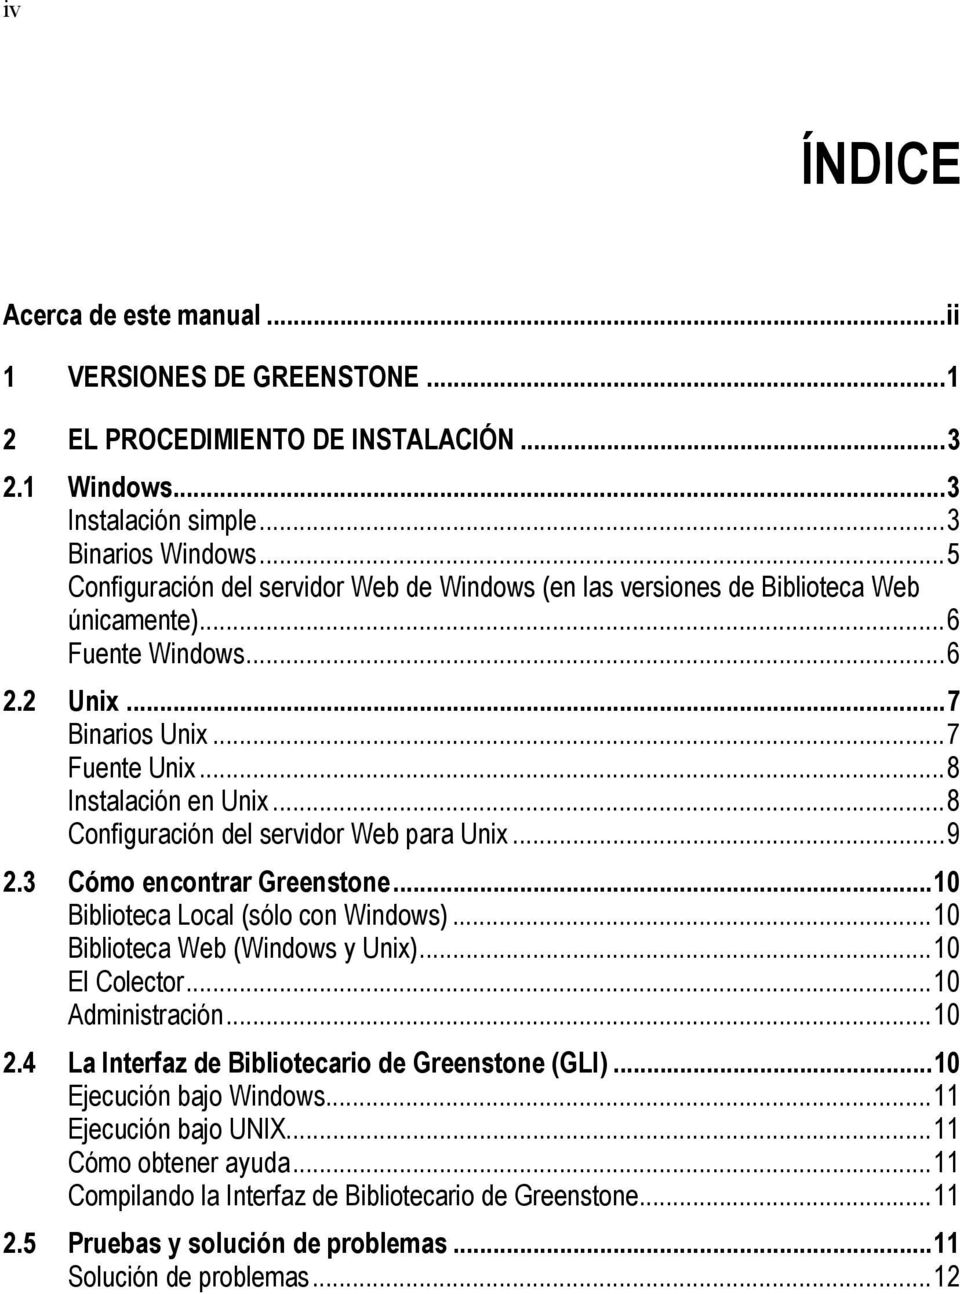 ..8 Configuración del servidor Web para Unix...9 2.3 Cómo encontrar Greenstone...10 Biblioteca Local (sólo con Windows)...10 Biblioteca Web (Windows y Unix)...10 El Colector...10 Administración...10 2.